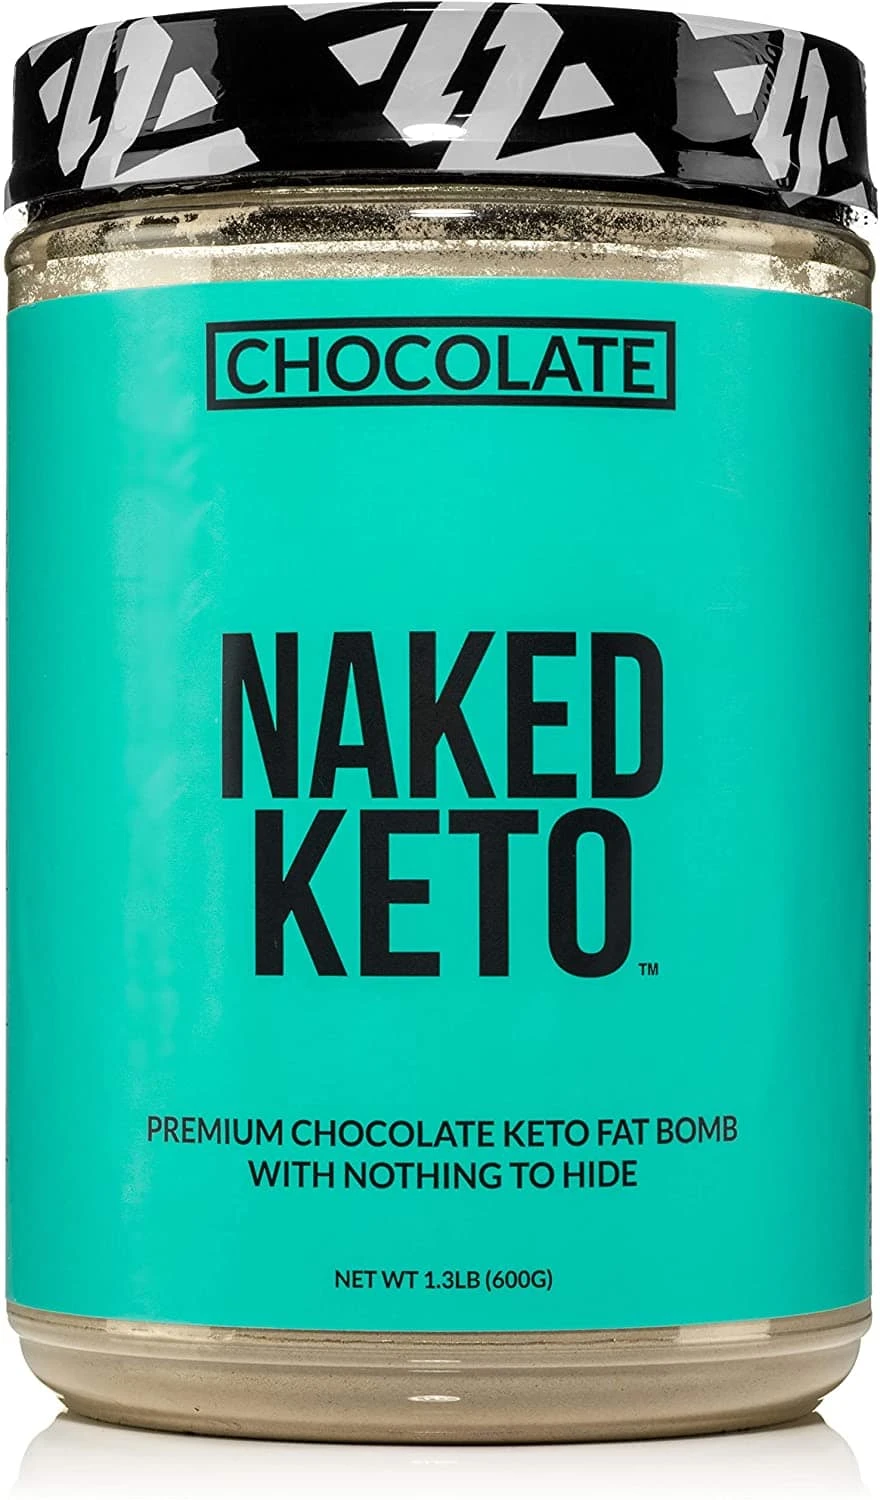 Naked Keto Chocolate Fat Bomb